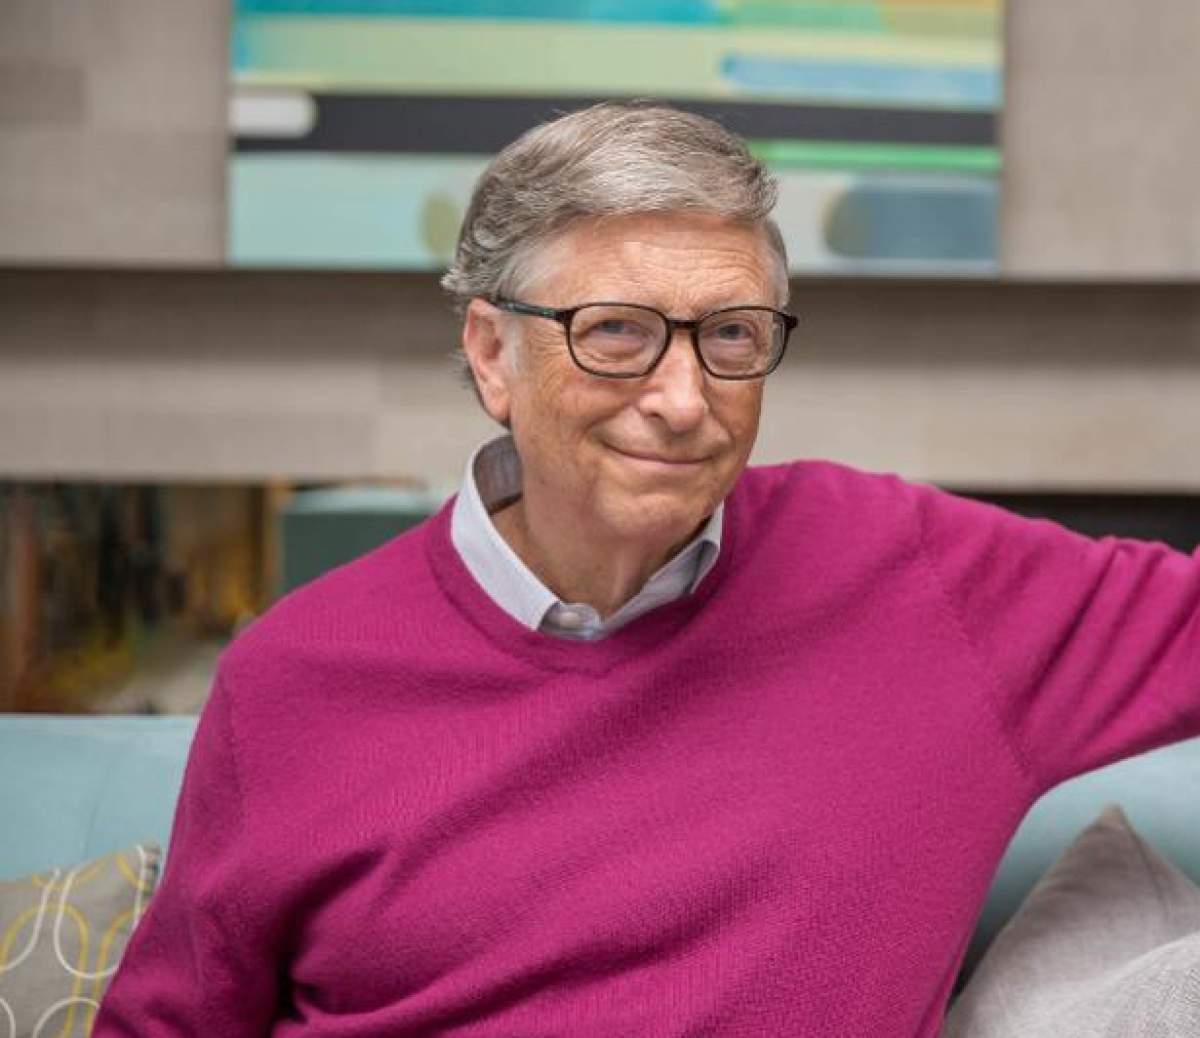 Reacția lui Bill Gates, după ce a fost acuzat că știa de coronavirus! „Am arătat o simulare”